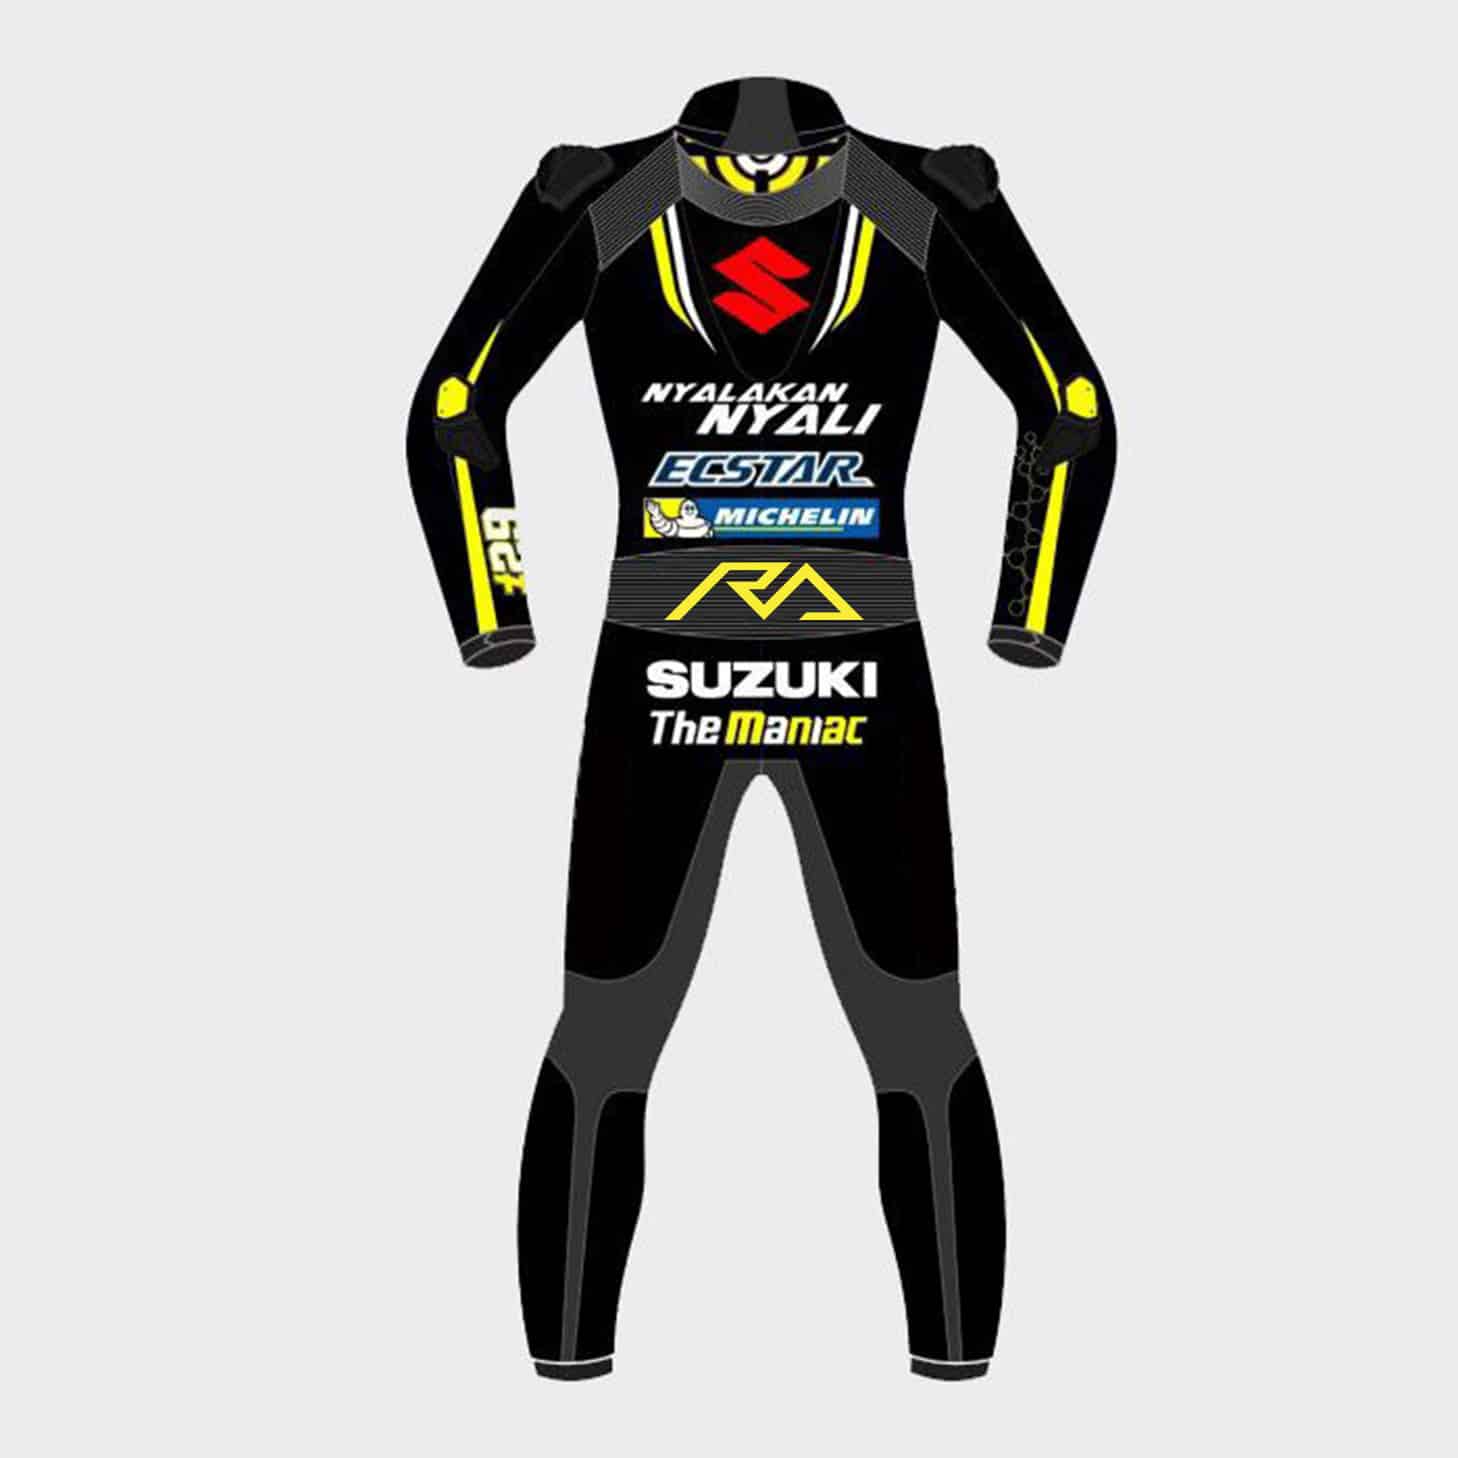 Suzuki Nyalakan Nyali MotoGP Leather Suit